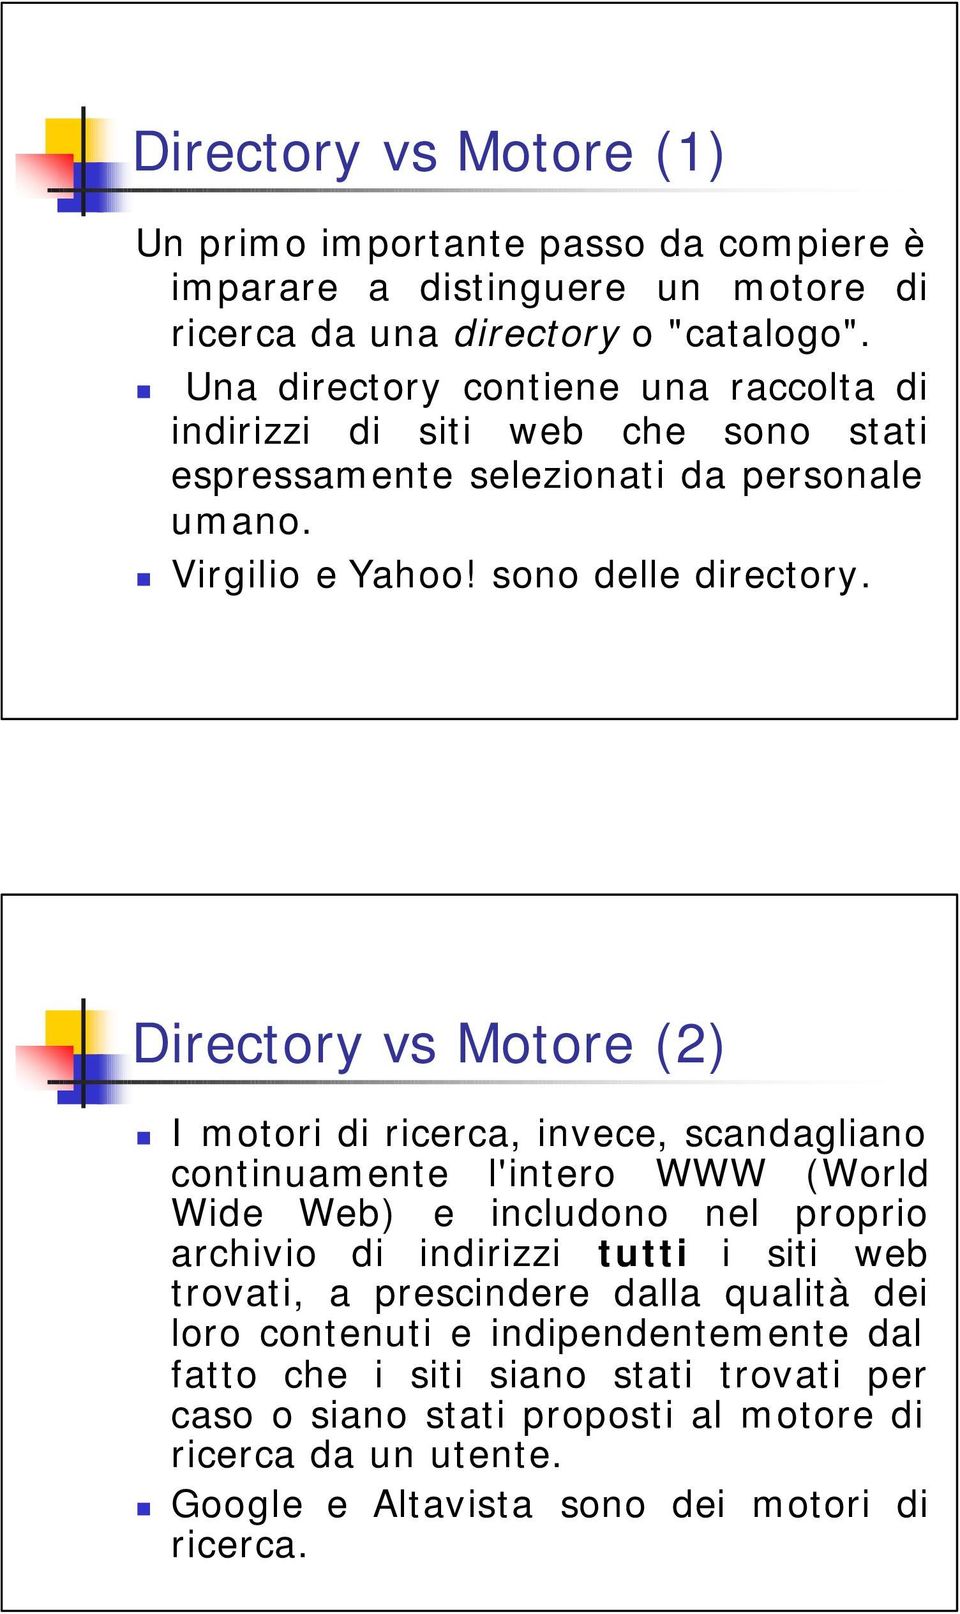 Directory vs Motore (2) I motori di ricerca, invece, scandagliano continuamente l'intero WWW (World Wide Web) e includono nel proprio archivio di indirizzi tutti i siti web